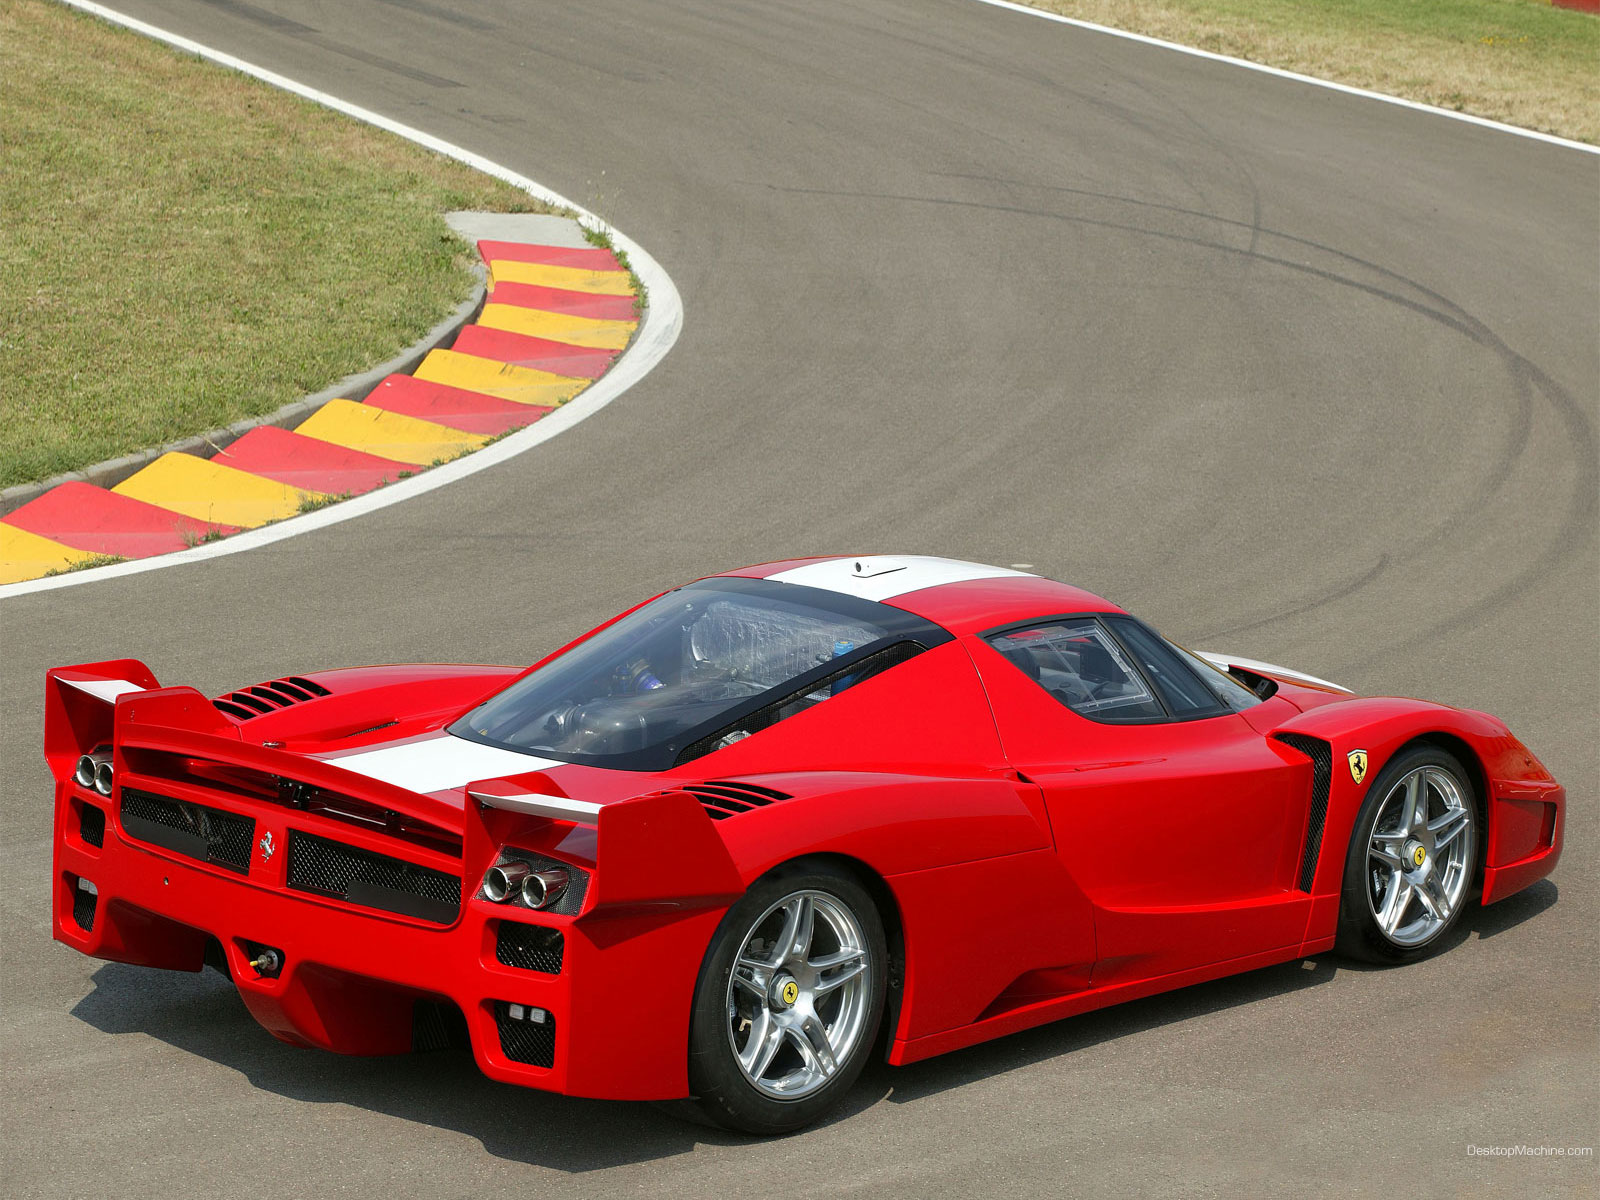 Meilleurs fonds d'écran Ferrari Fxx pour l'écran du téléphone